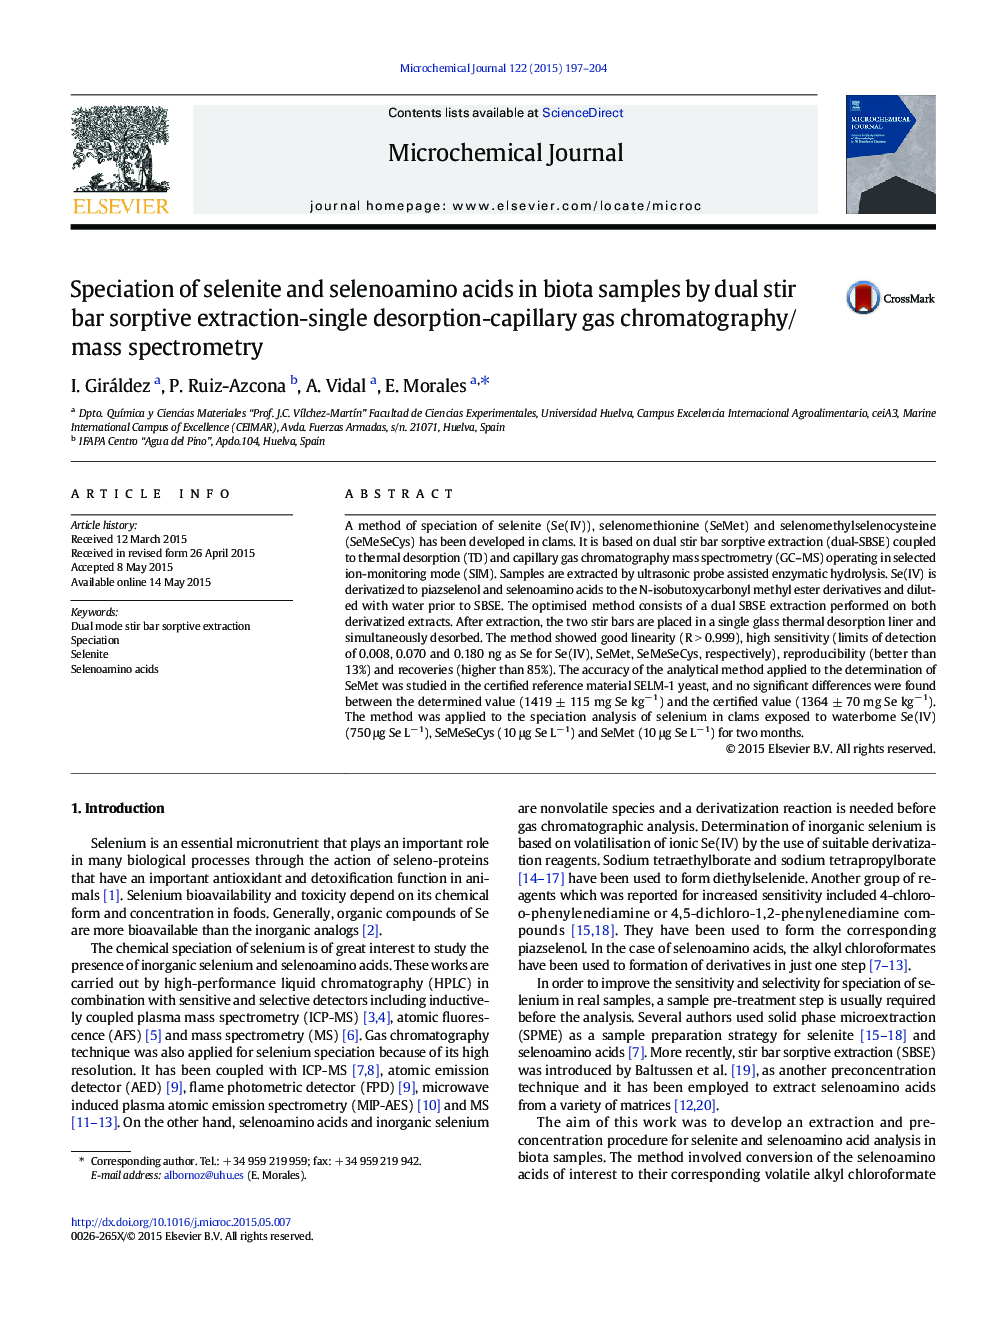 تعیین ایزوله های سلنیوم و سلنوئین آمین در نمونه های زیستی با استفاده از دو روش ترکیب سوربیتی - تک کروماتوگرافی / اسپیرومتری جرمی 